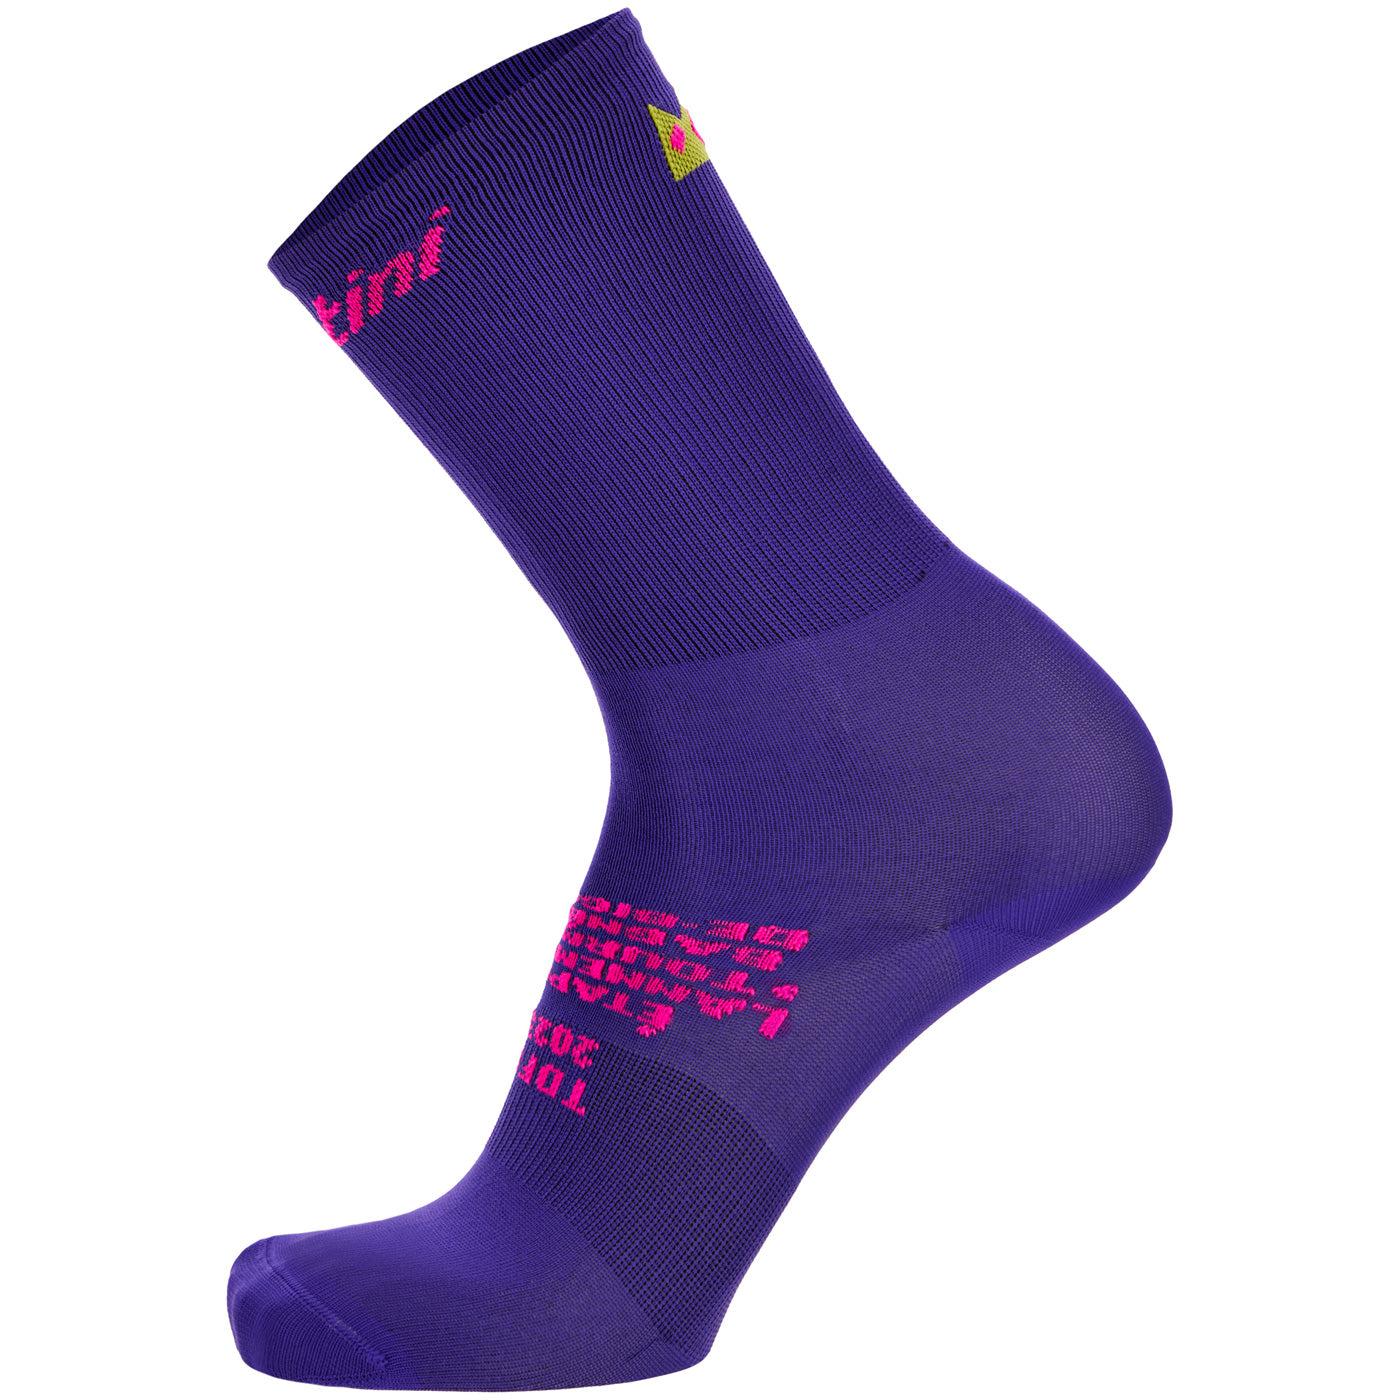 Tour de France socks - Tourmalet